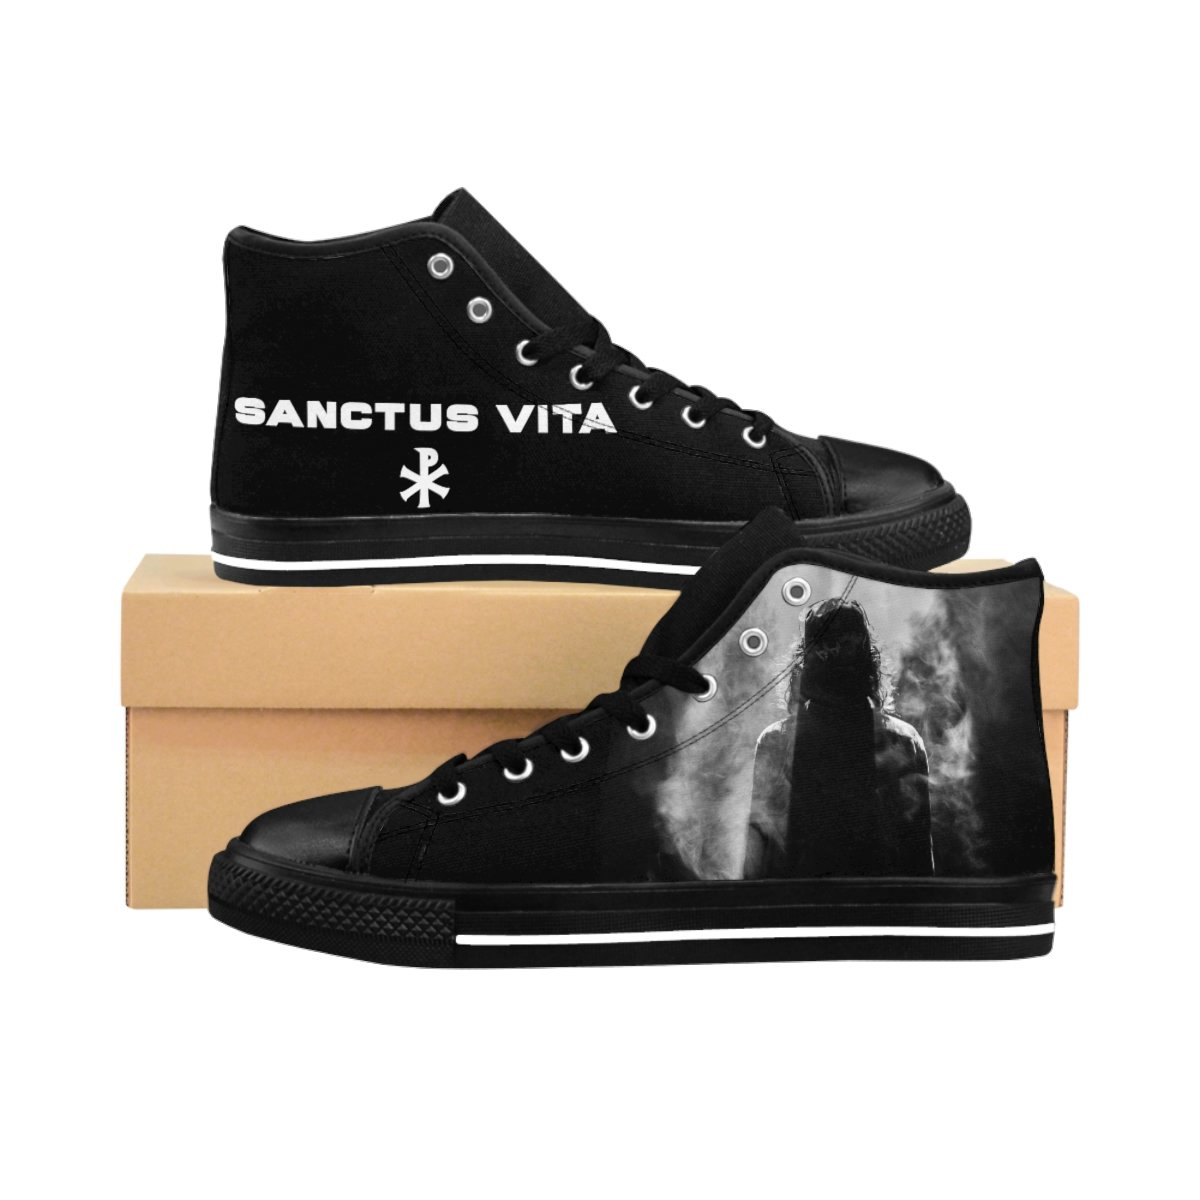 Sanctus Vita Men’s High-top Sneakers